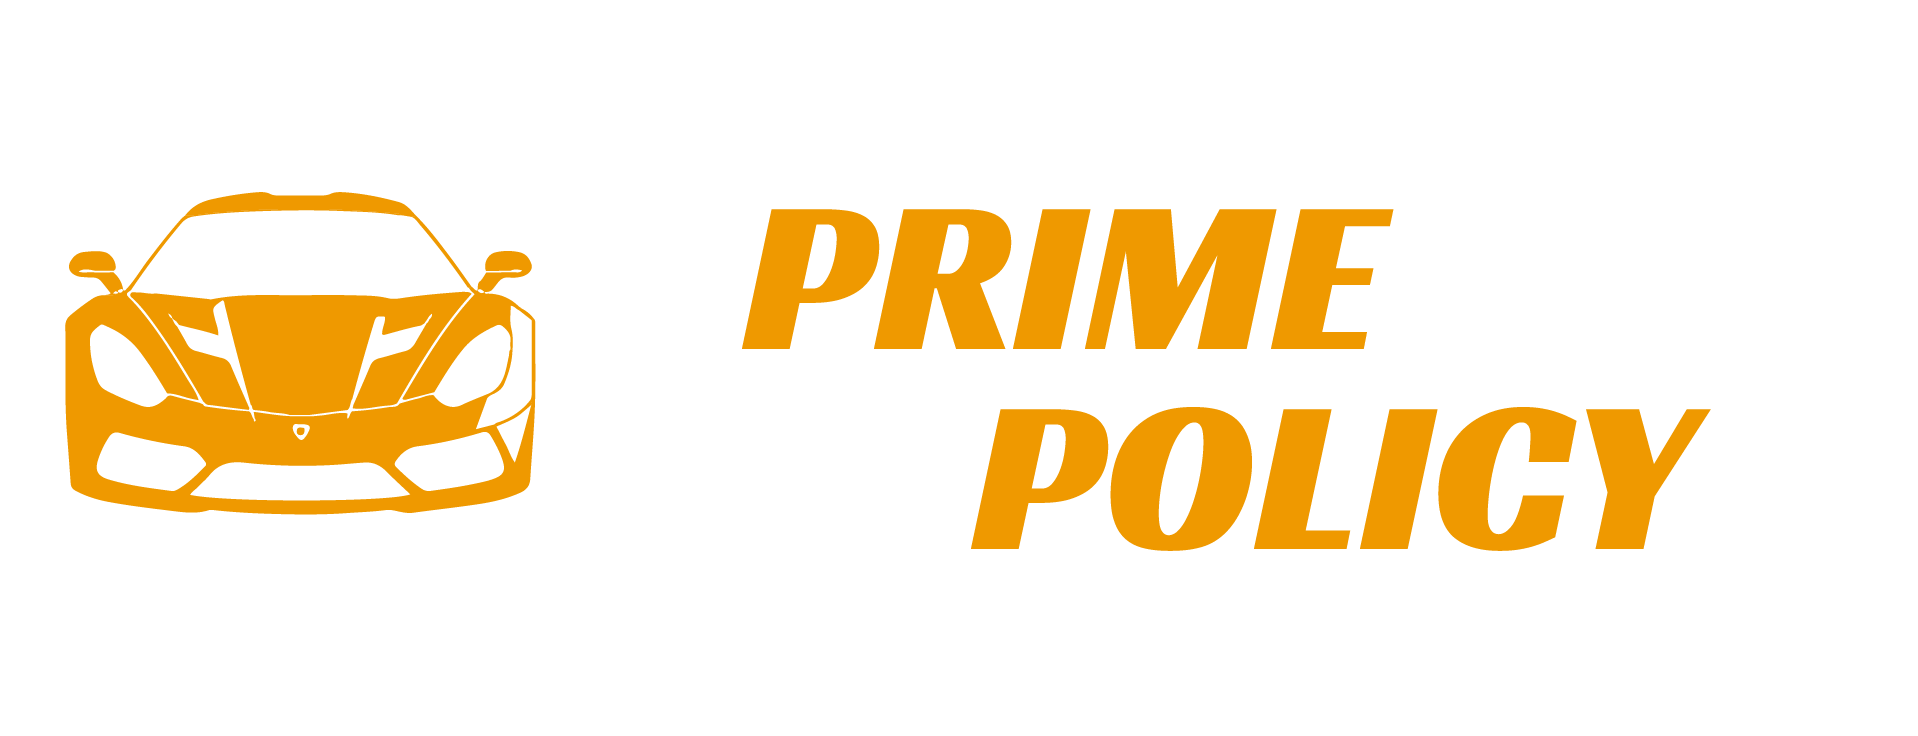 Prime Auto Policy